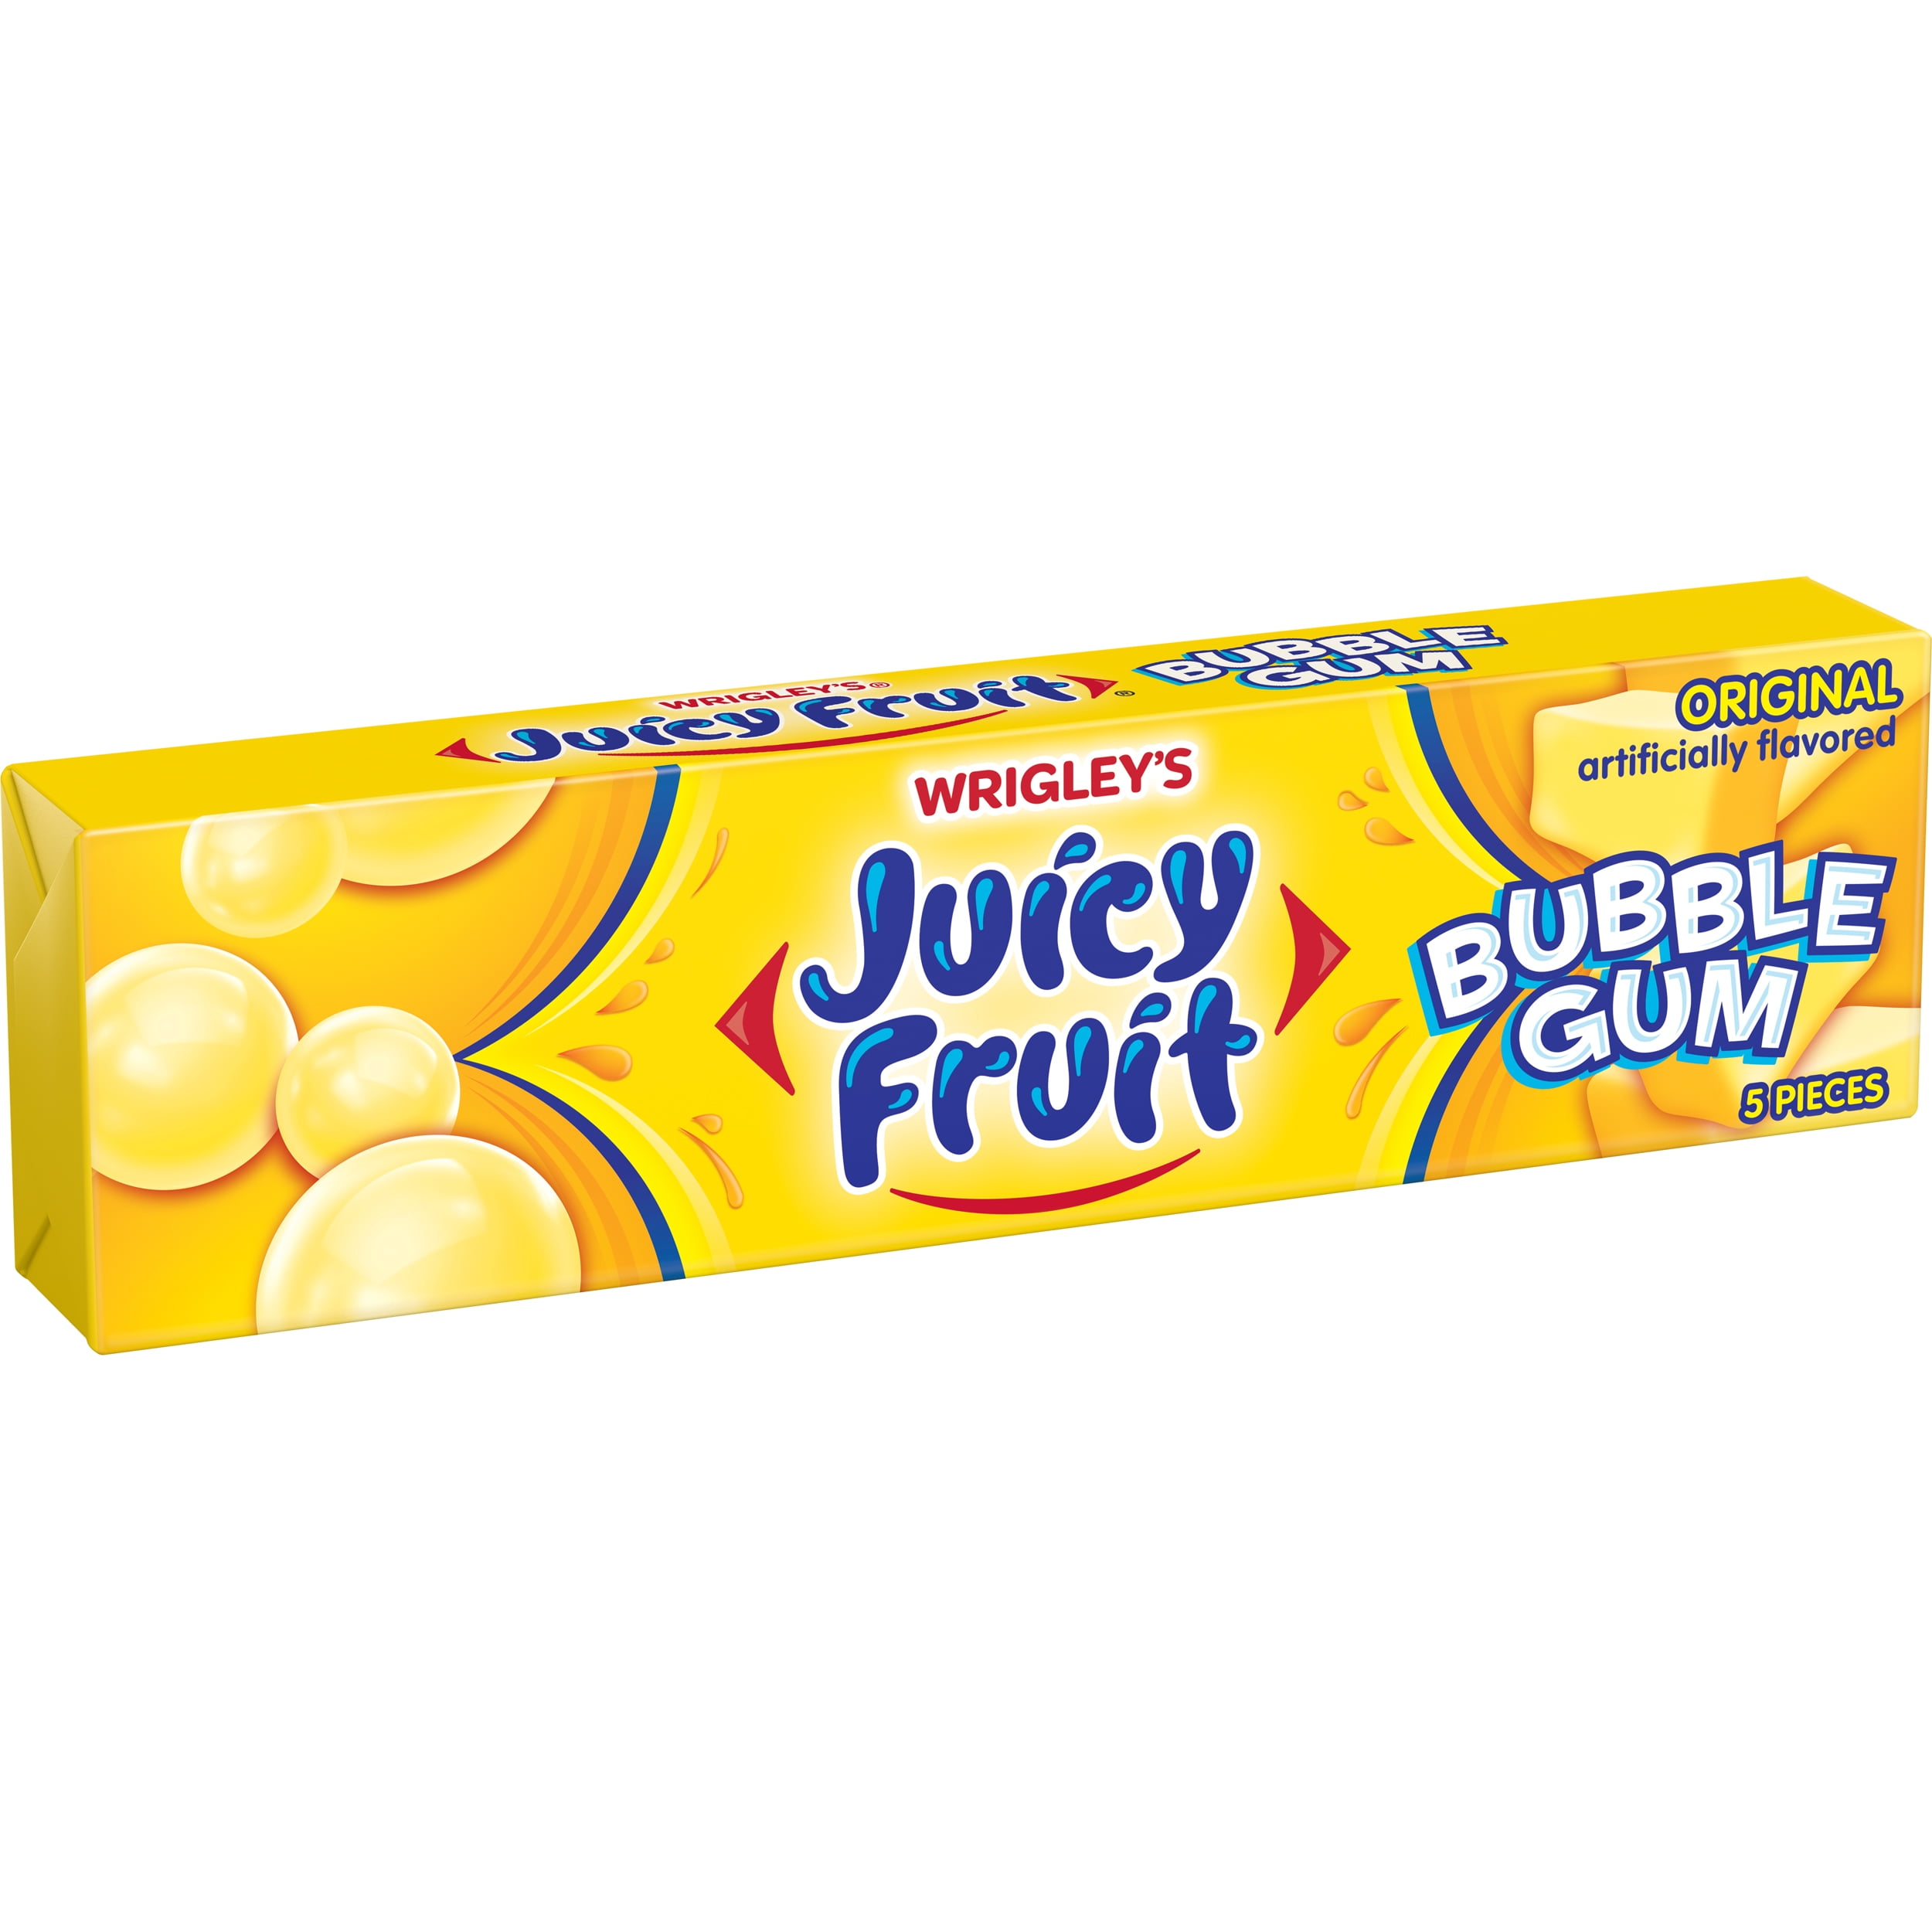 Juicy Fruit Original Bubble Chewing Gum 5 Piece Single Pack